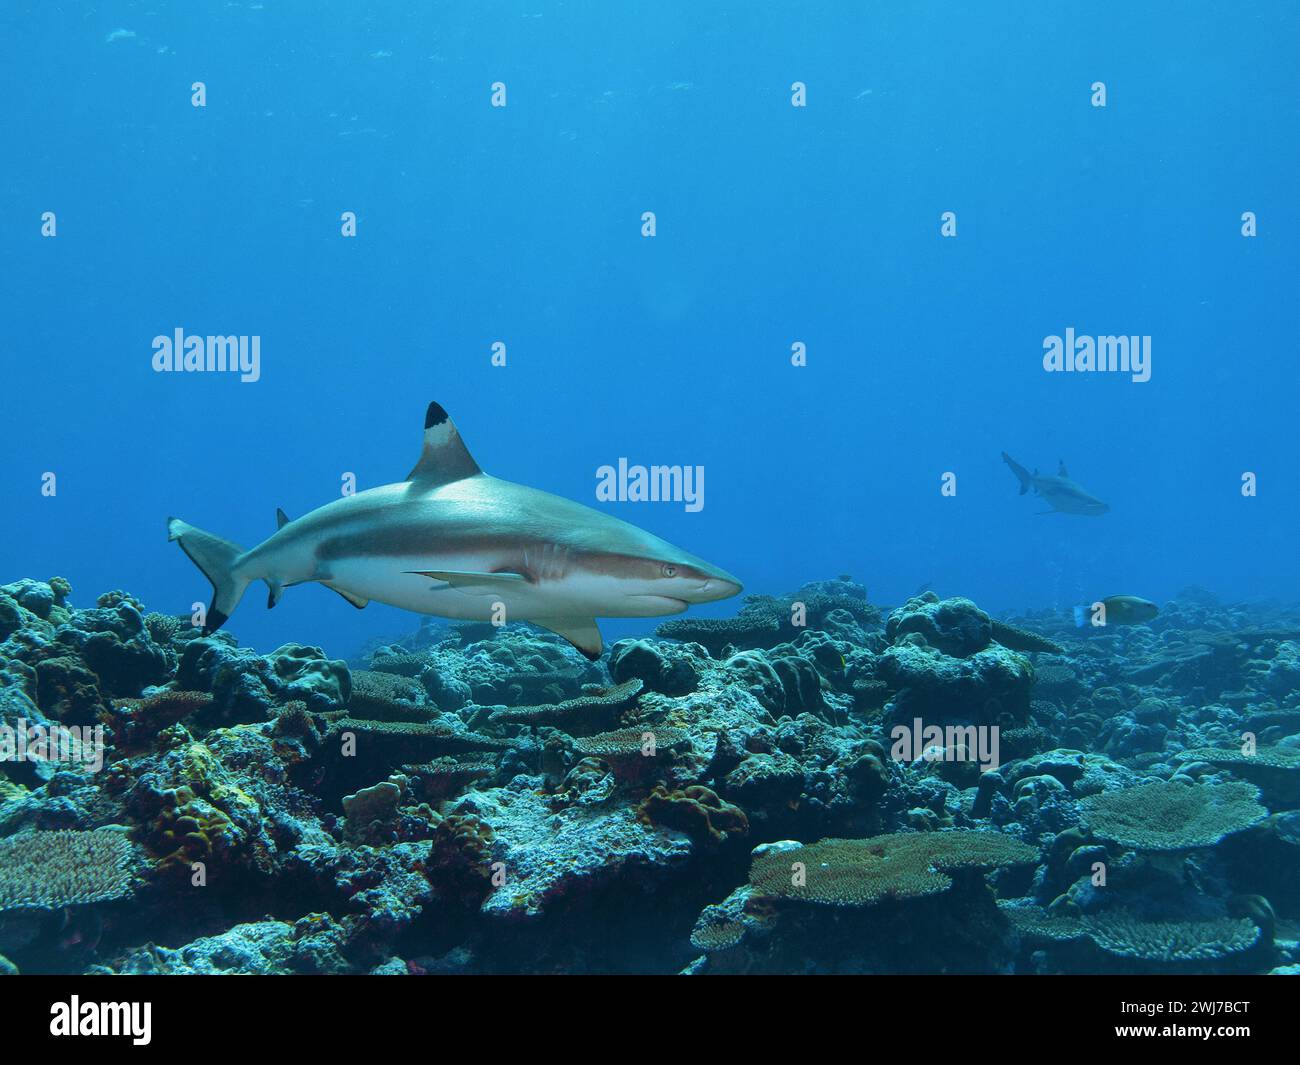 Lo squalo pinna nera del Reef si sta avvicinando molto. Fotografia subacquea nella barriera corallina di Divespot Vertigo sull'isola di Yap in Micronesia - Oceano Pacifico. Foto Stock